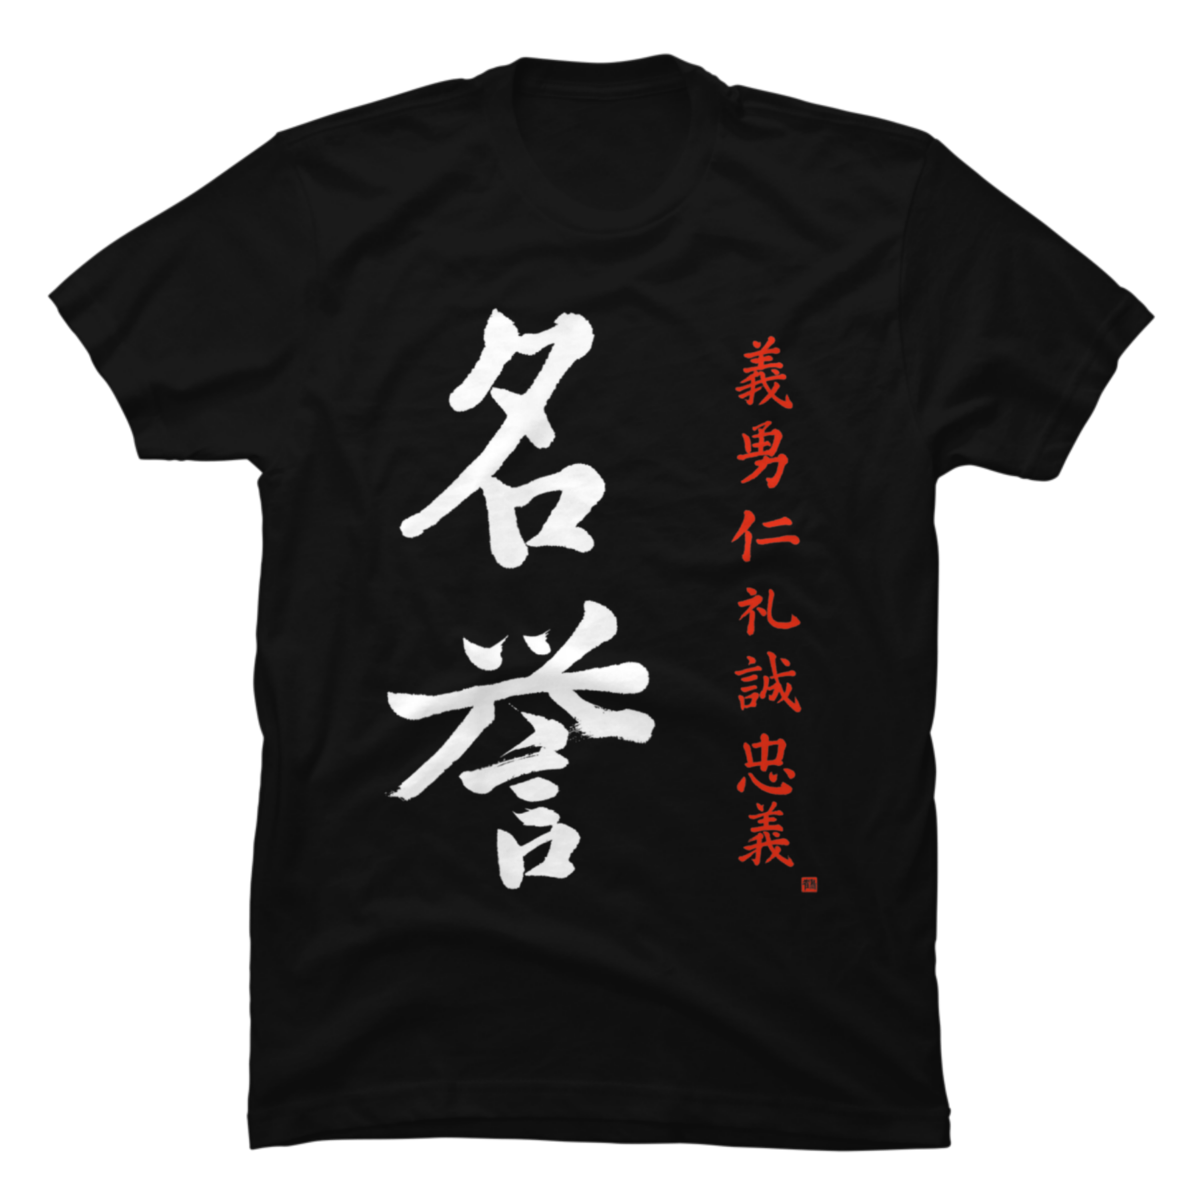 mandalorian code of honor shirt